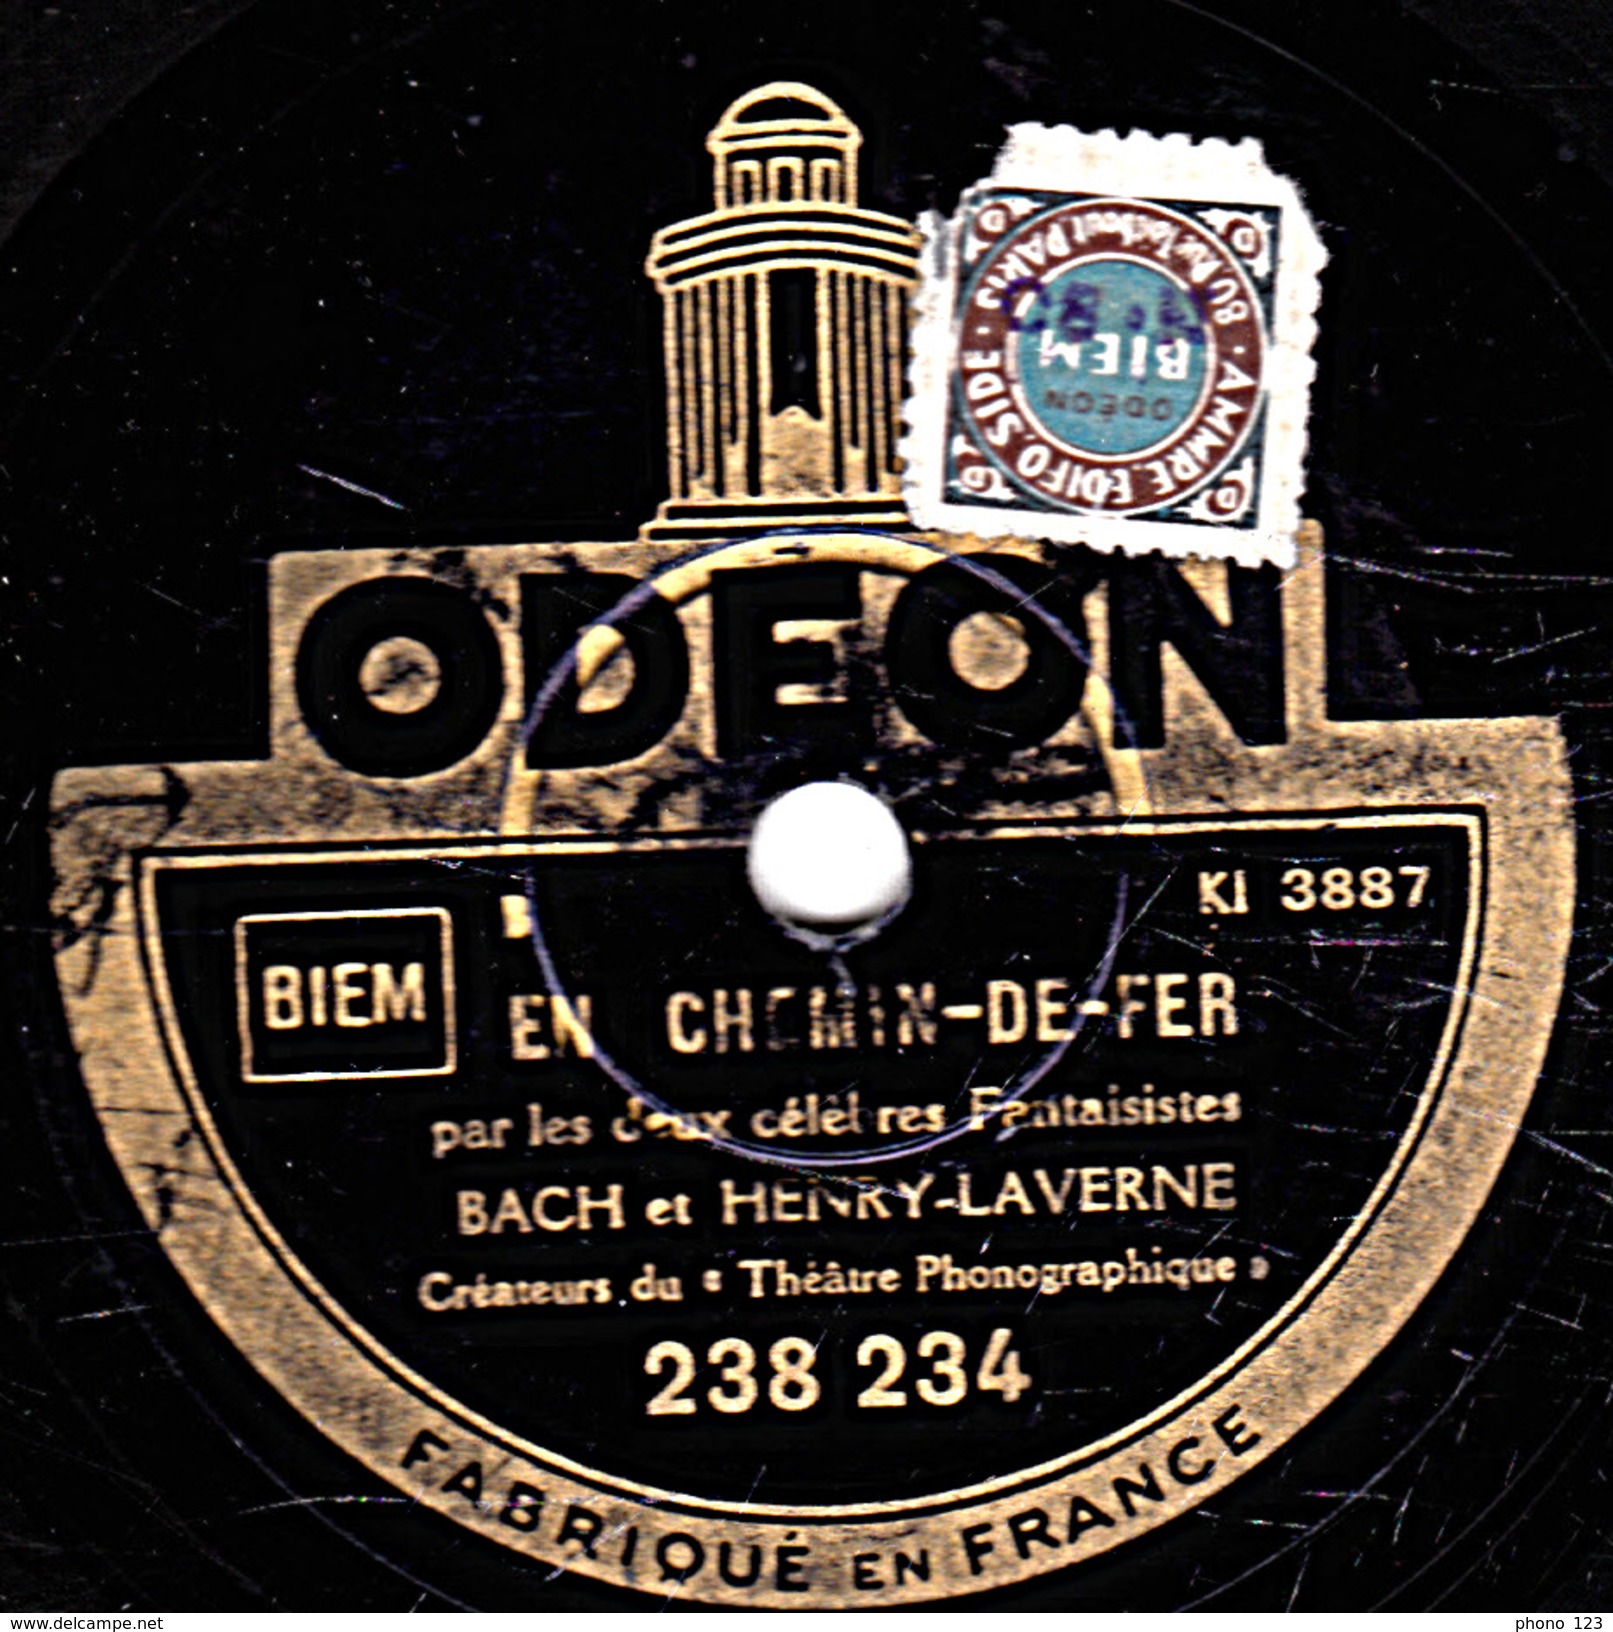 78 T. - 25 Cm - état B - BACH & HENRY-LAVERNE - LE FAUCONNIER DU ROI - EN CHEMIN-DE-FER - 78 T - Disques Pour Gramophone